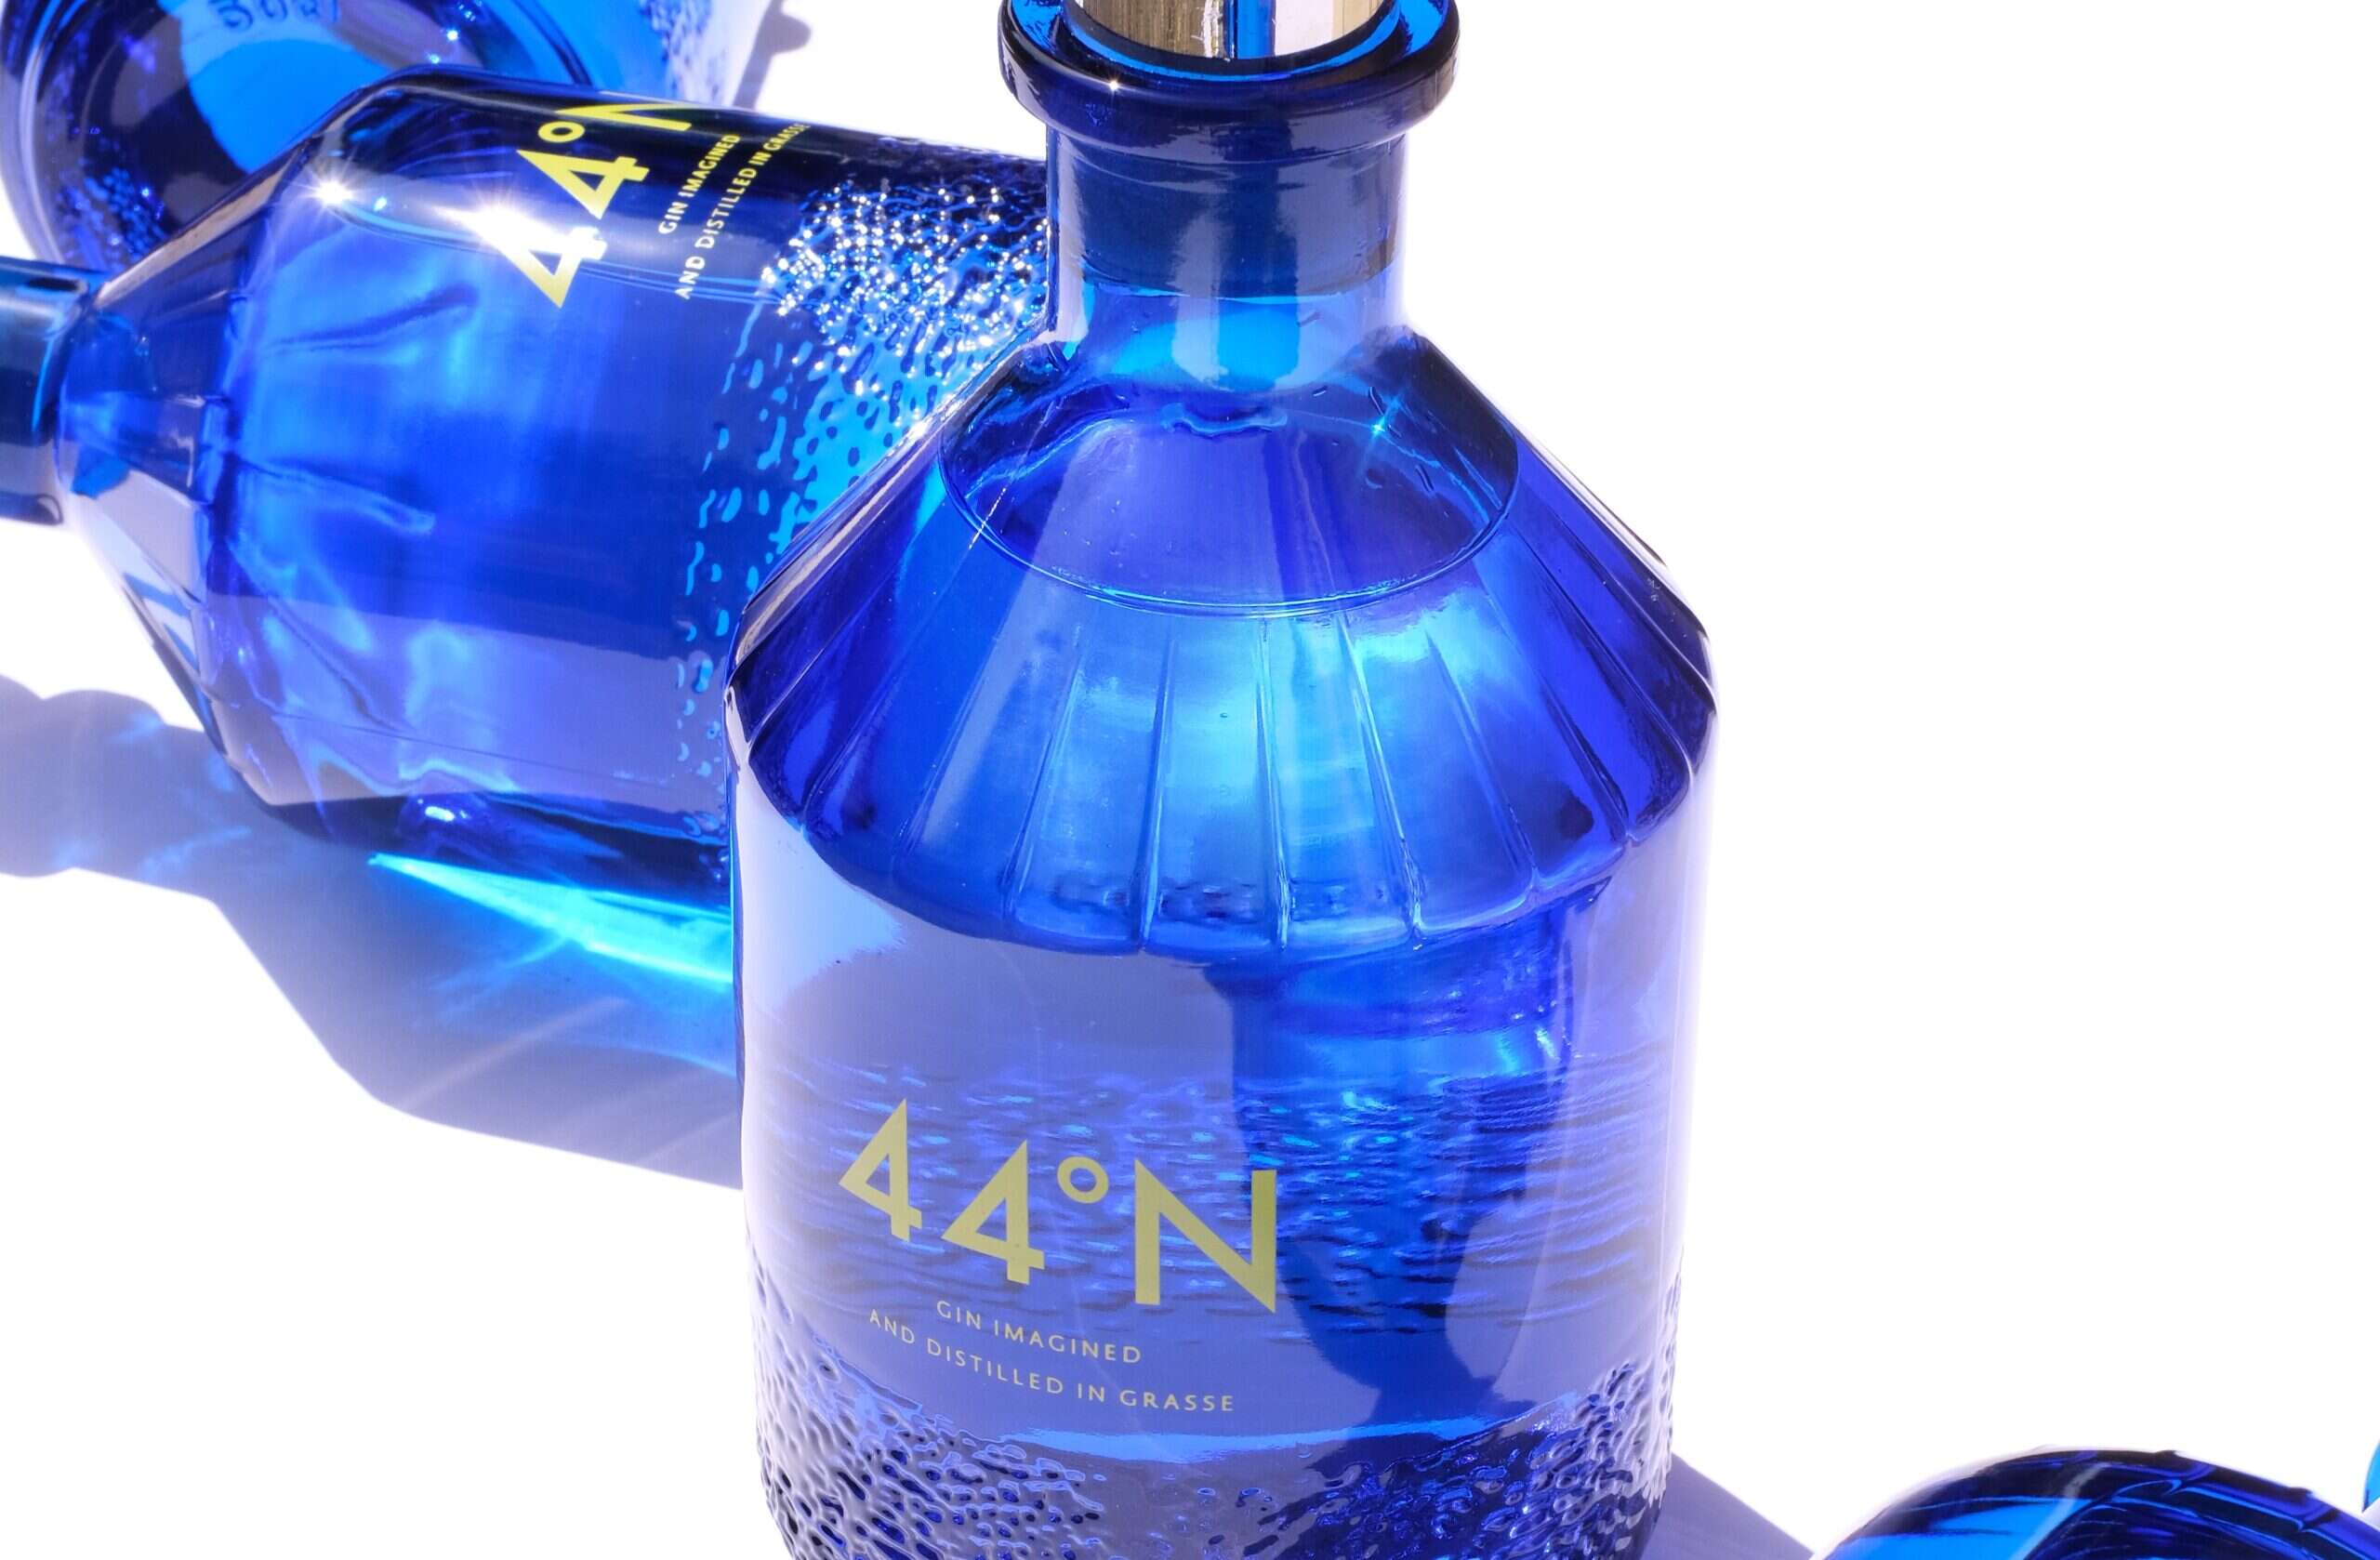 n44 gin bottle